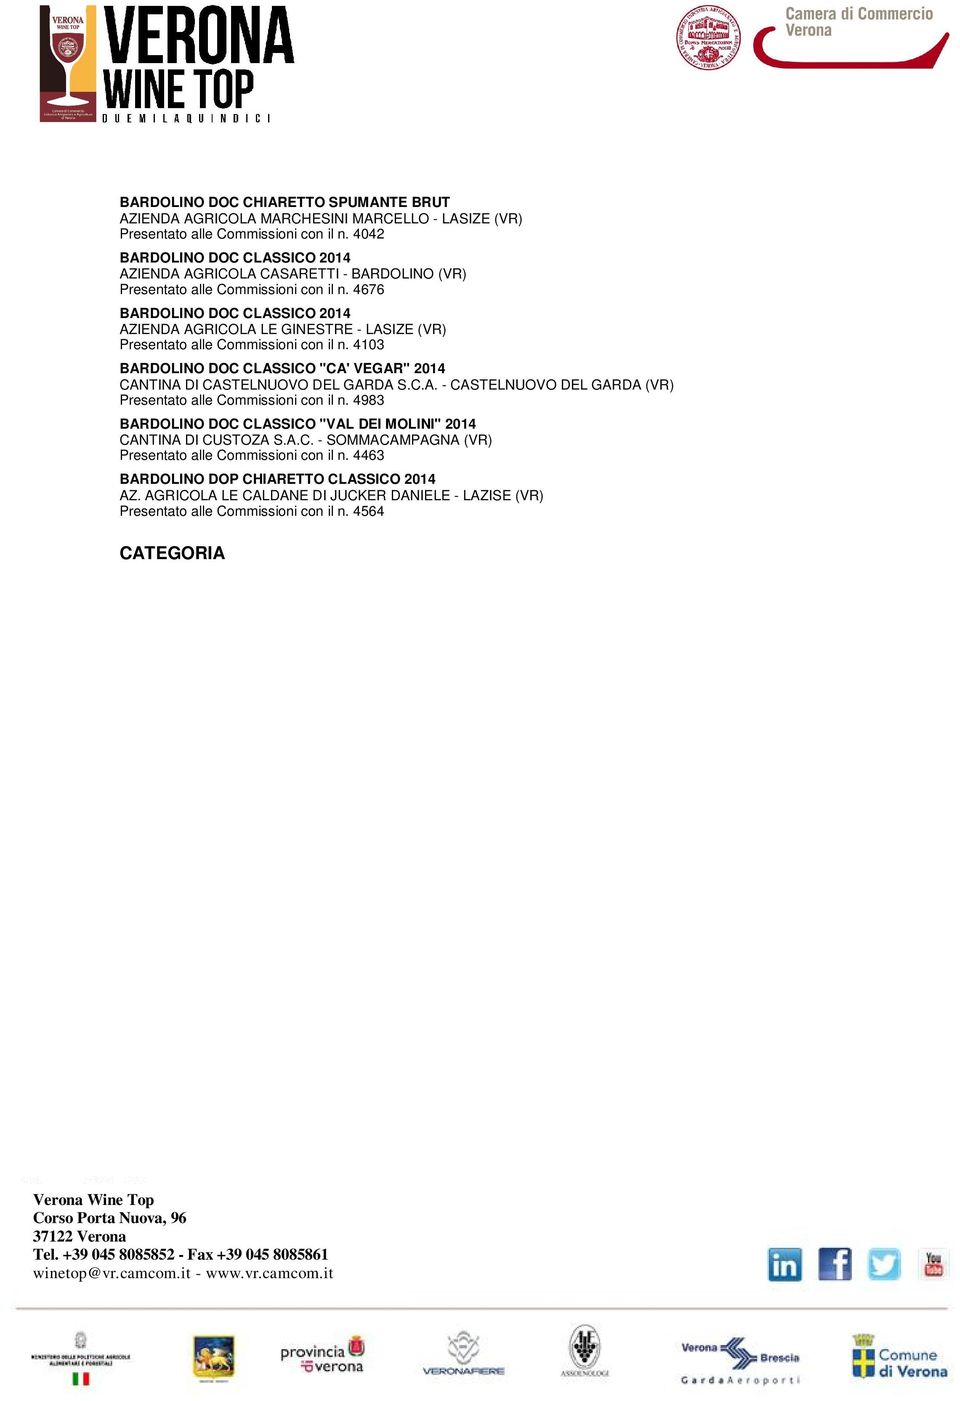 4676 BARDOLINO DOC CLASSICO 2014 AZIENDA AGRICOLA LE GINESTRE - LASIZE (VR) Presentato alle Commissioni con il n. 4103 BARDOLINO DOC CLASSICO "CA' VEGAR" 2014 CANTINA DI CASTELNUOVO DEL GARDA S.C.A. - CASTELNUOVO DEL GARDA (VR) Presentato alle Commissioni con il n.